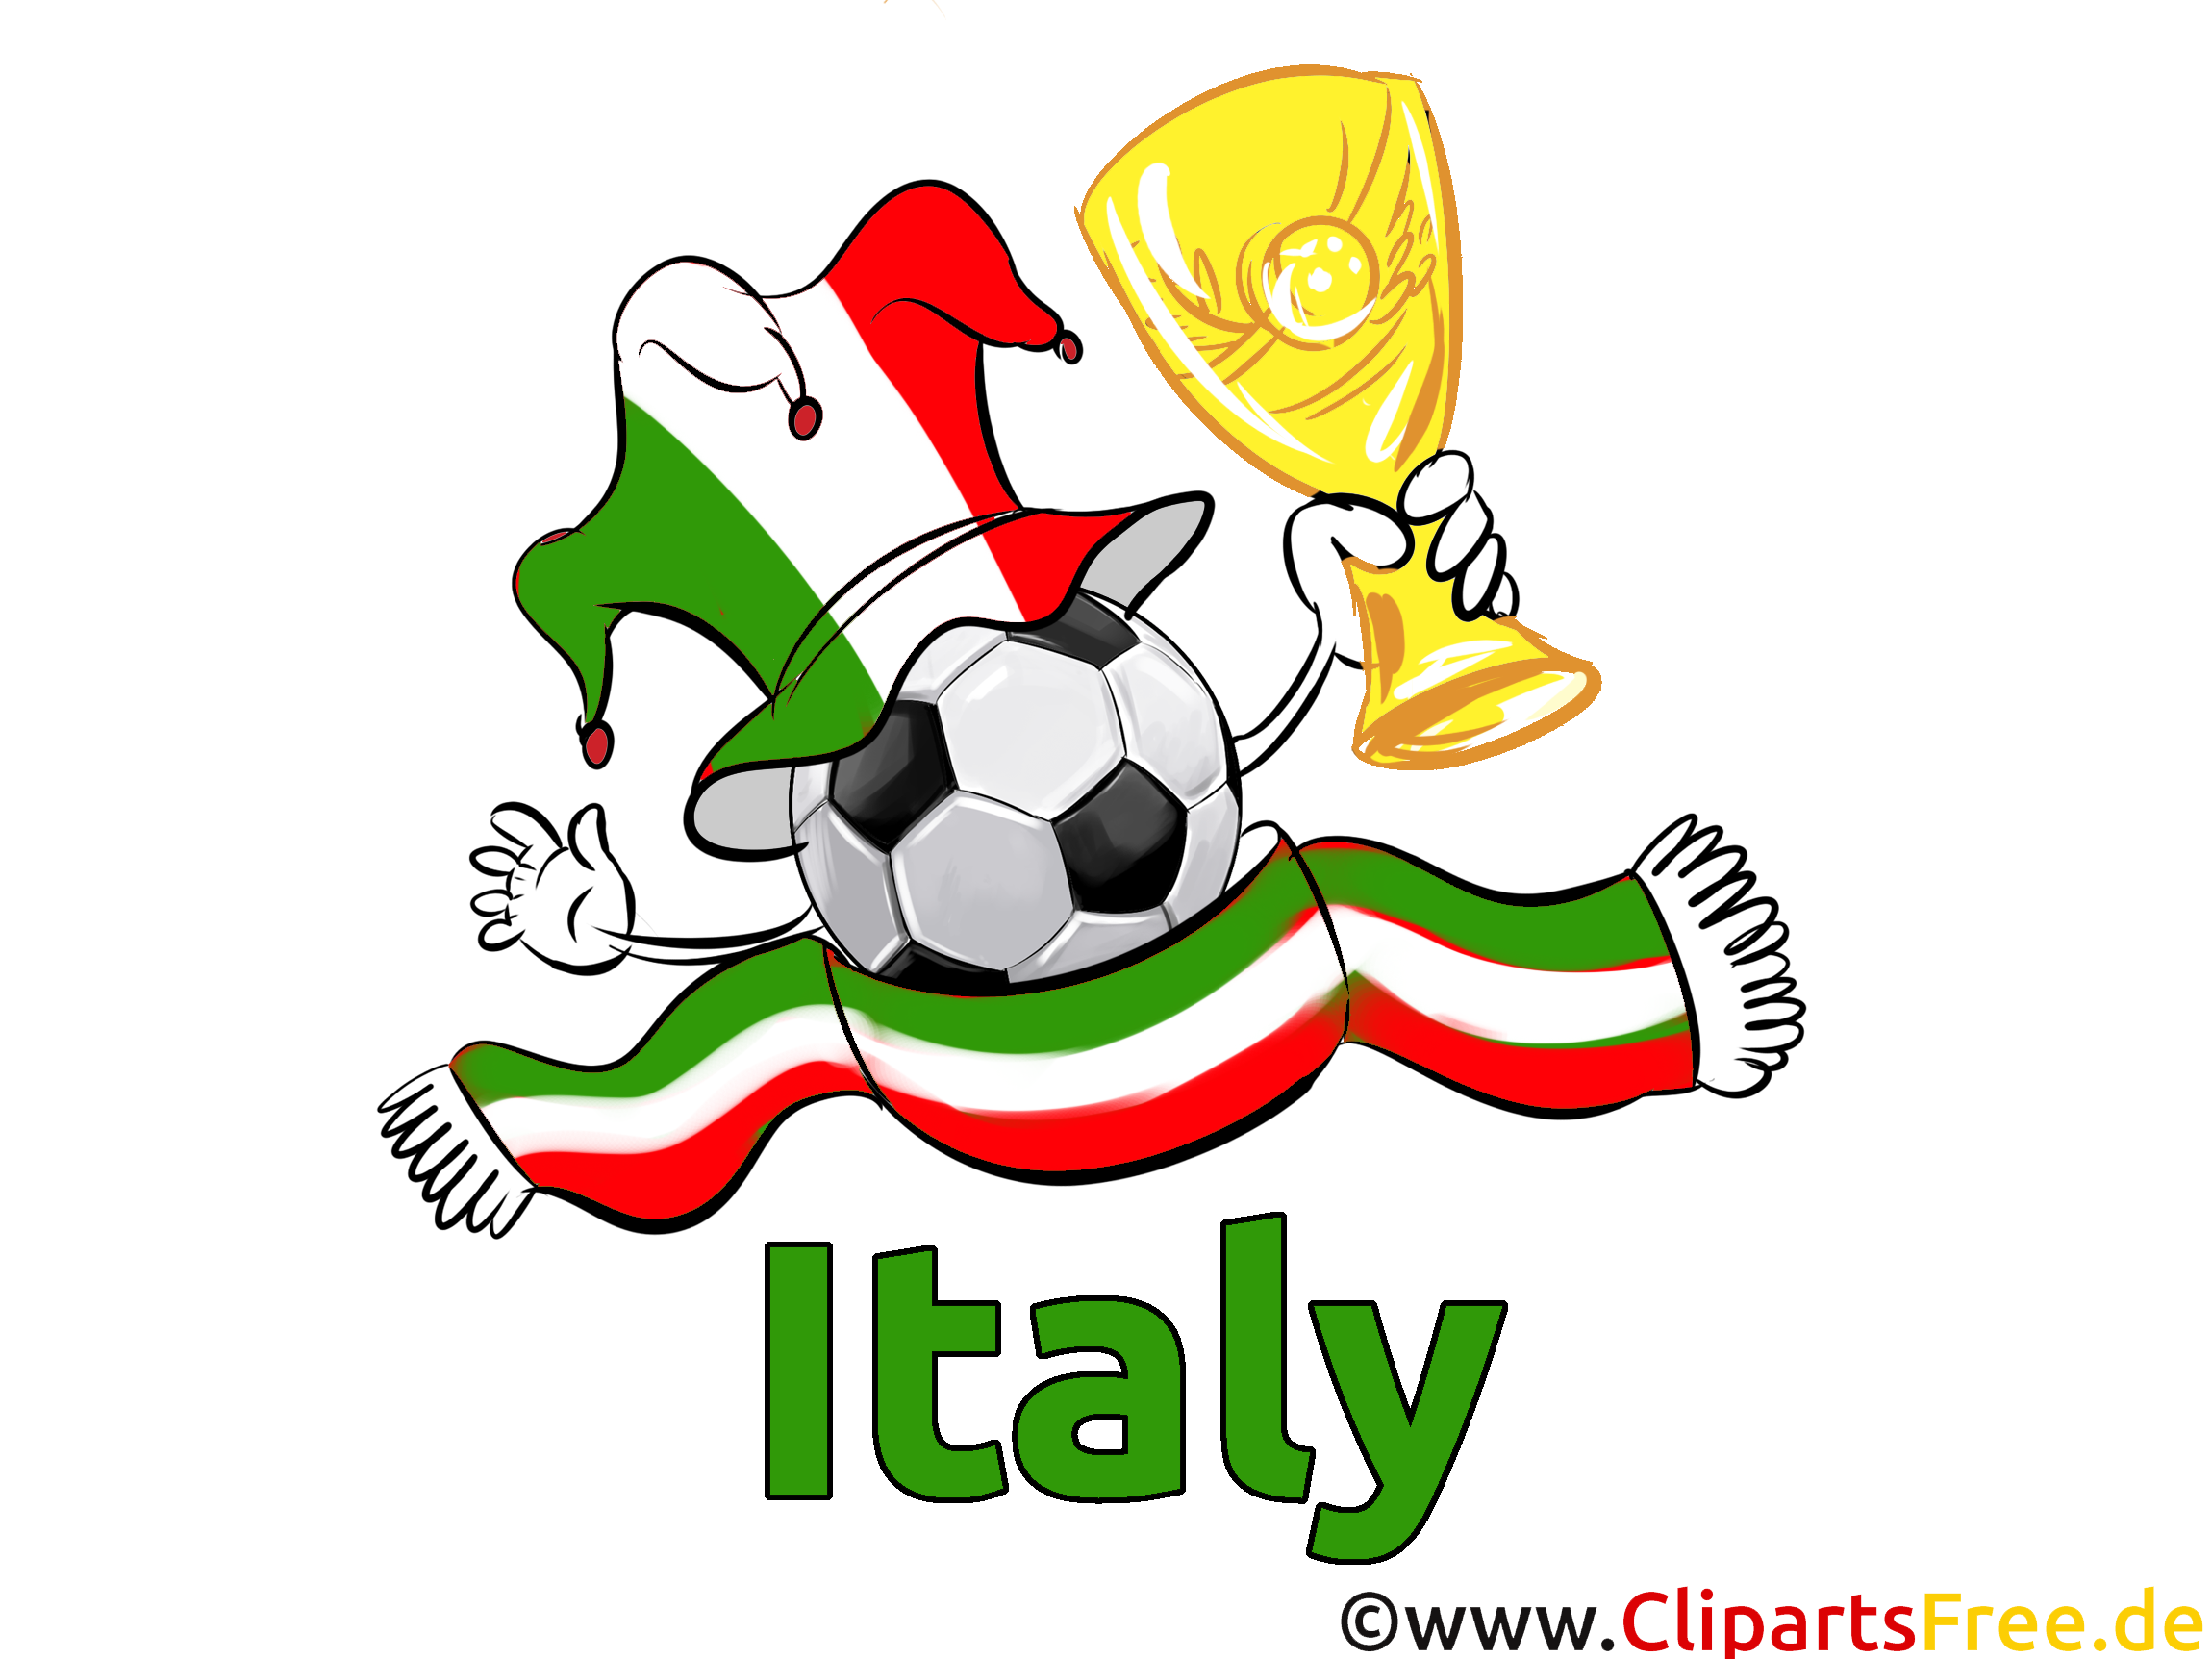 Championnat d'Europe Italie pour télécharger